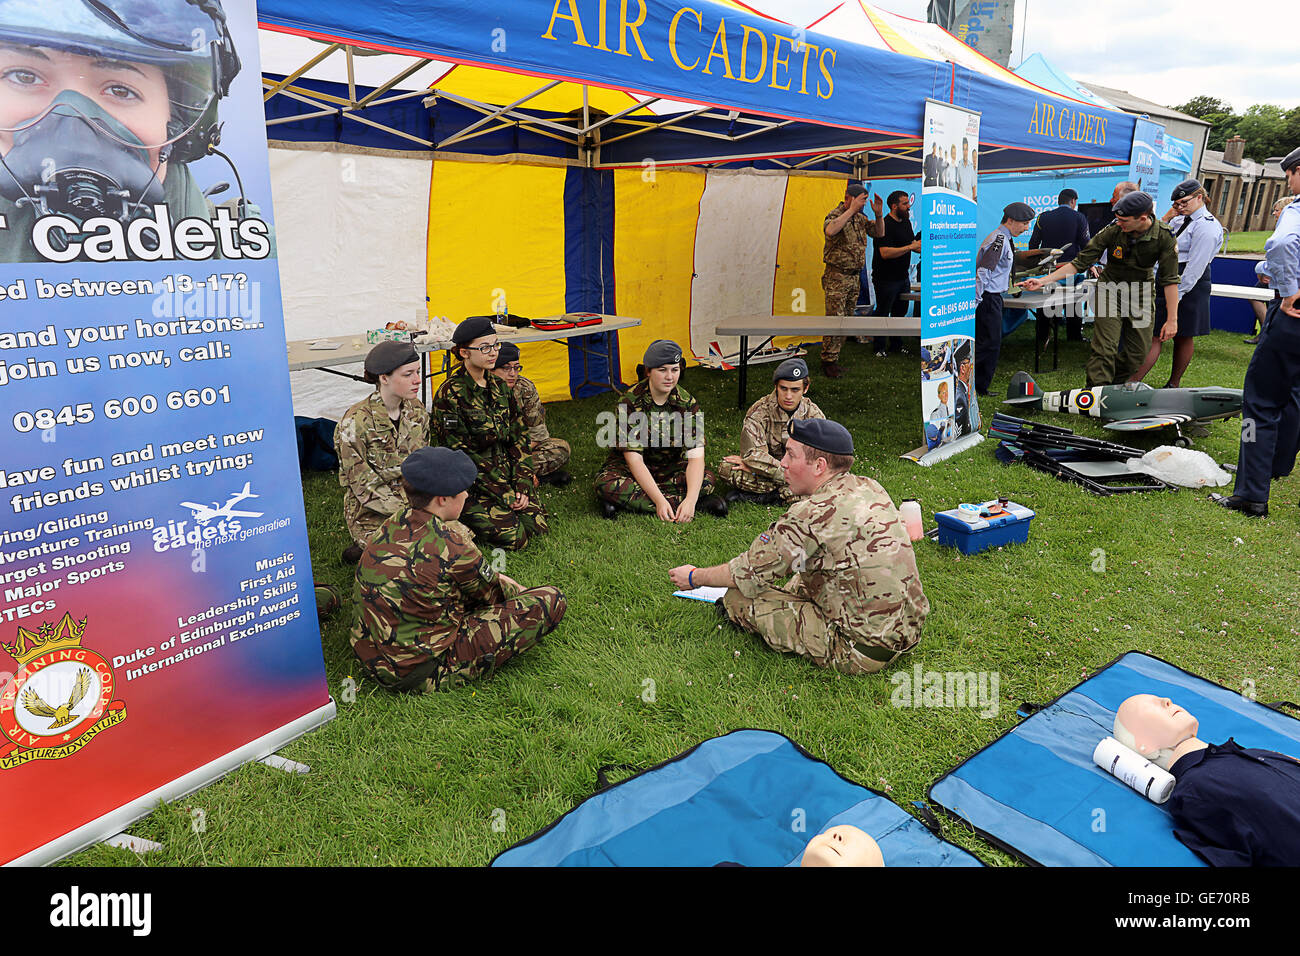 Air Cadets at Scotland's National Airshow. UK Stock Photo